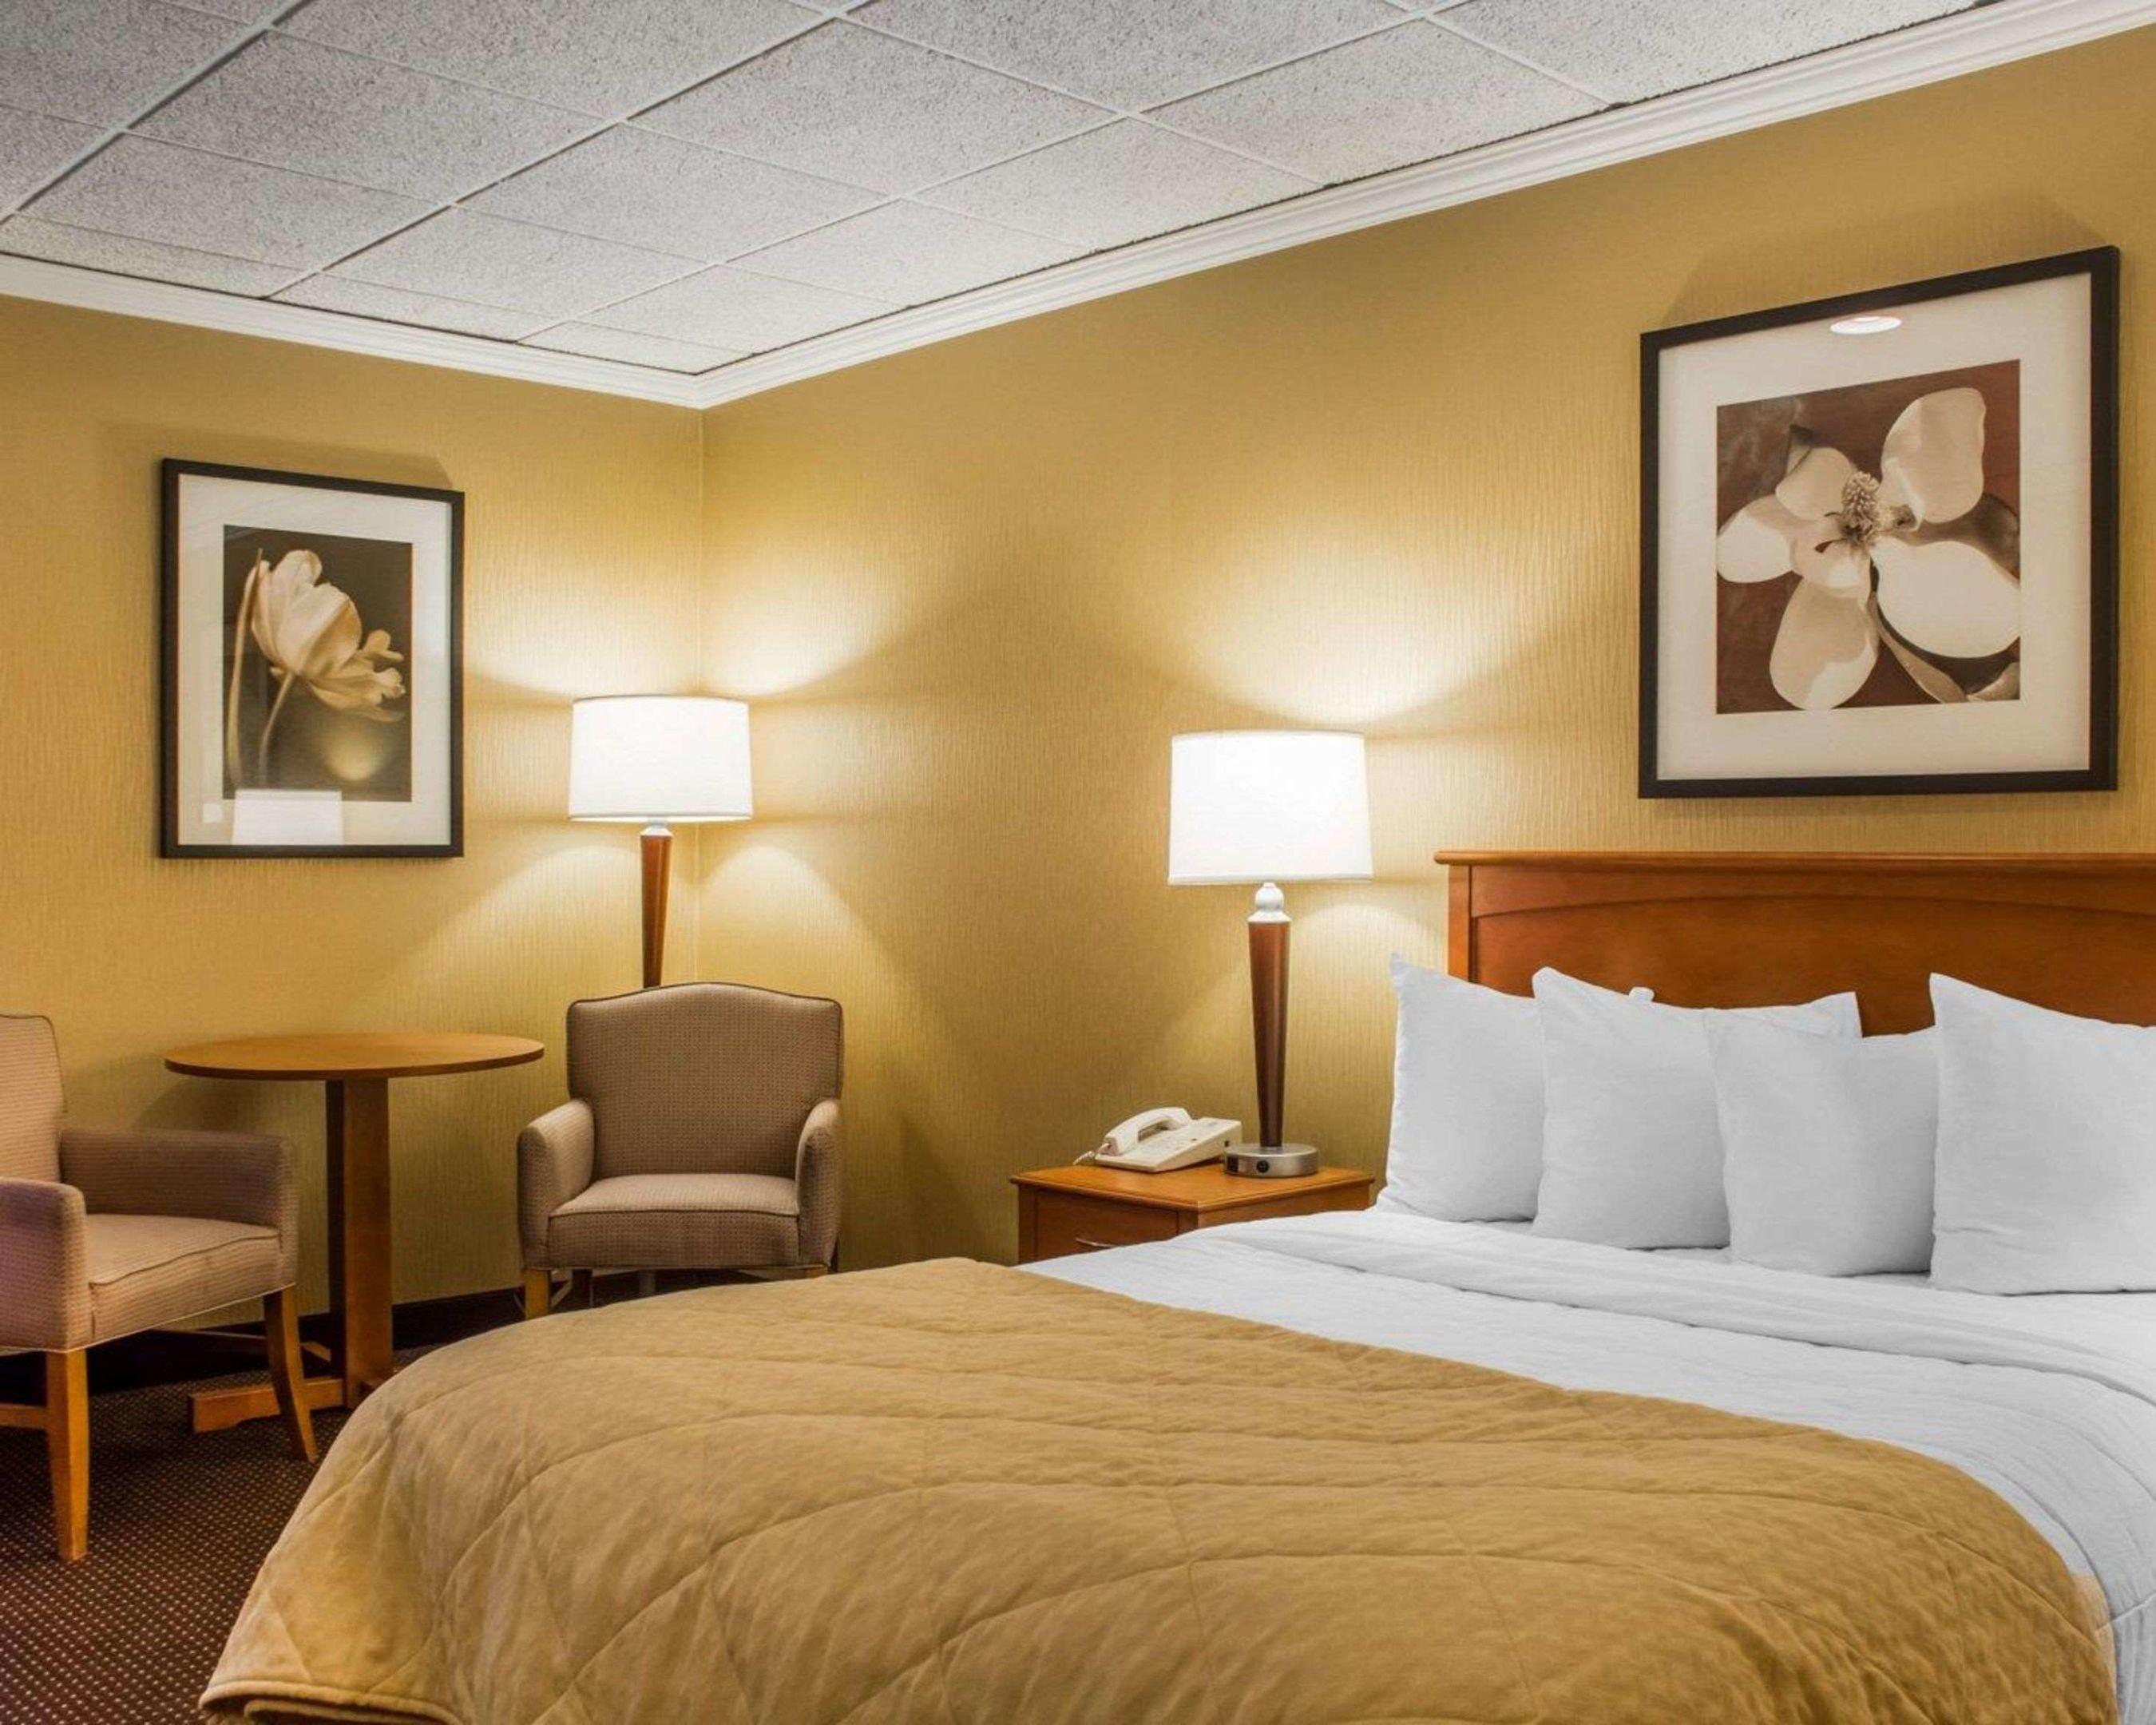 Quality Inn & Suites Riverfront